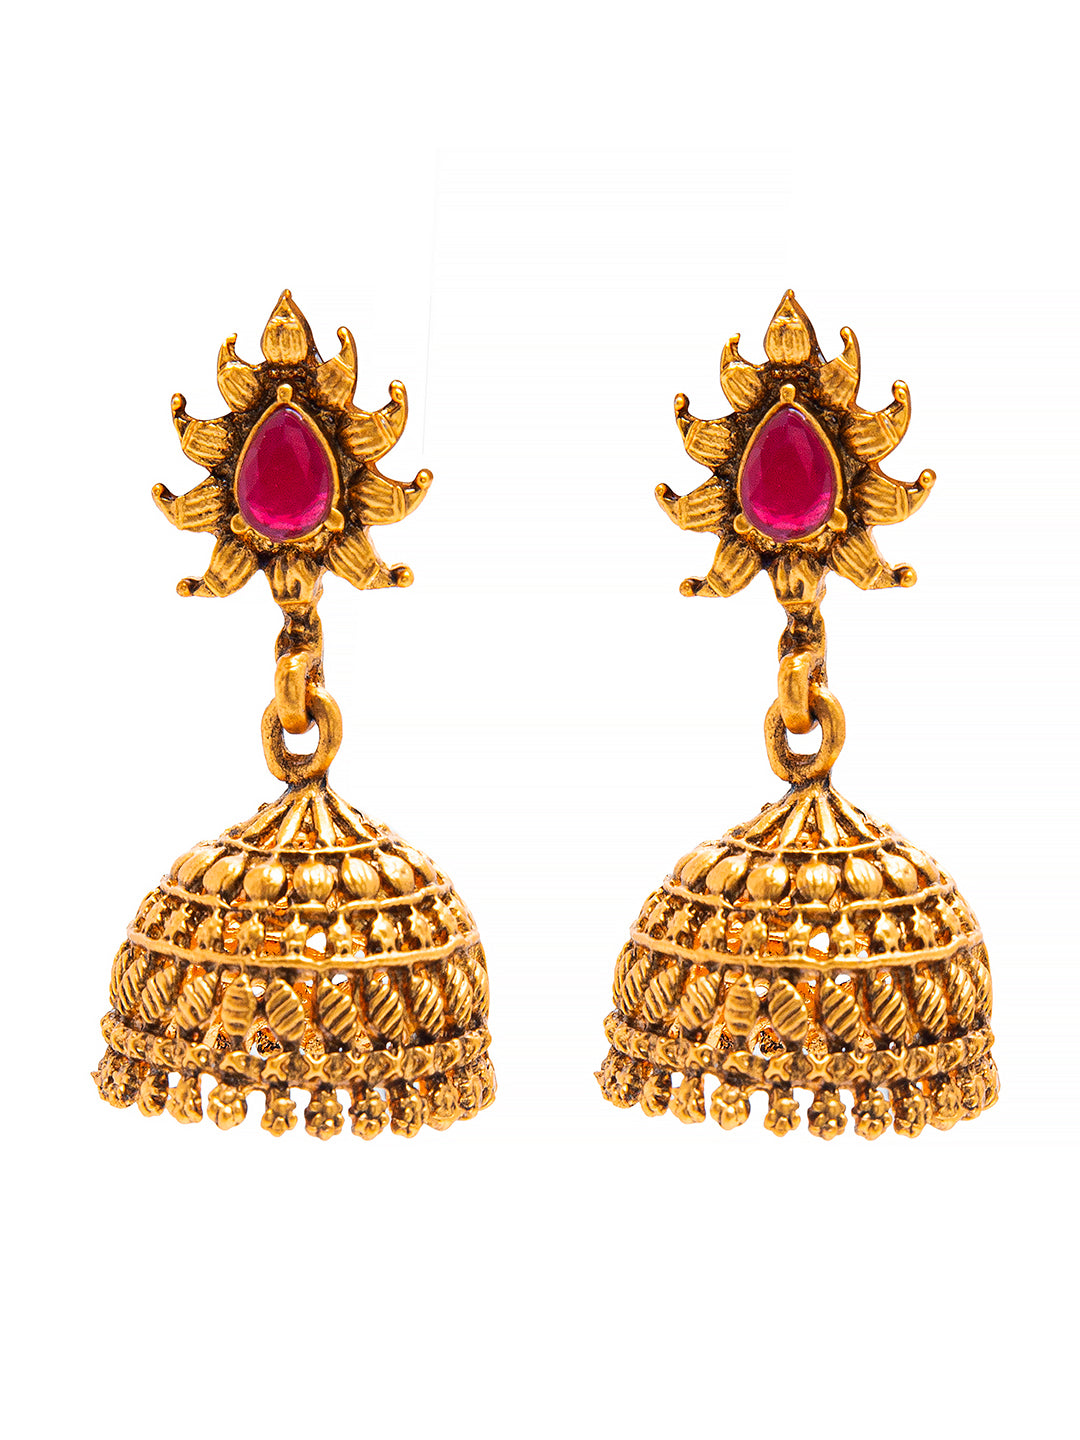 Temple Jewellery Earrings | Temple jewellery earrings, Gold jewellery  design necklaces, Gold earrings designs